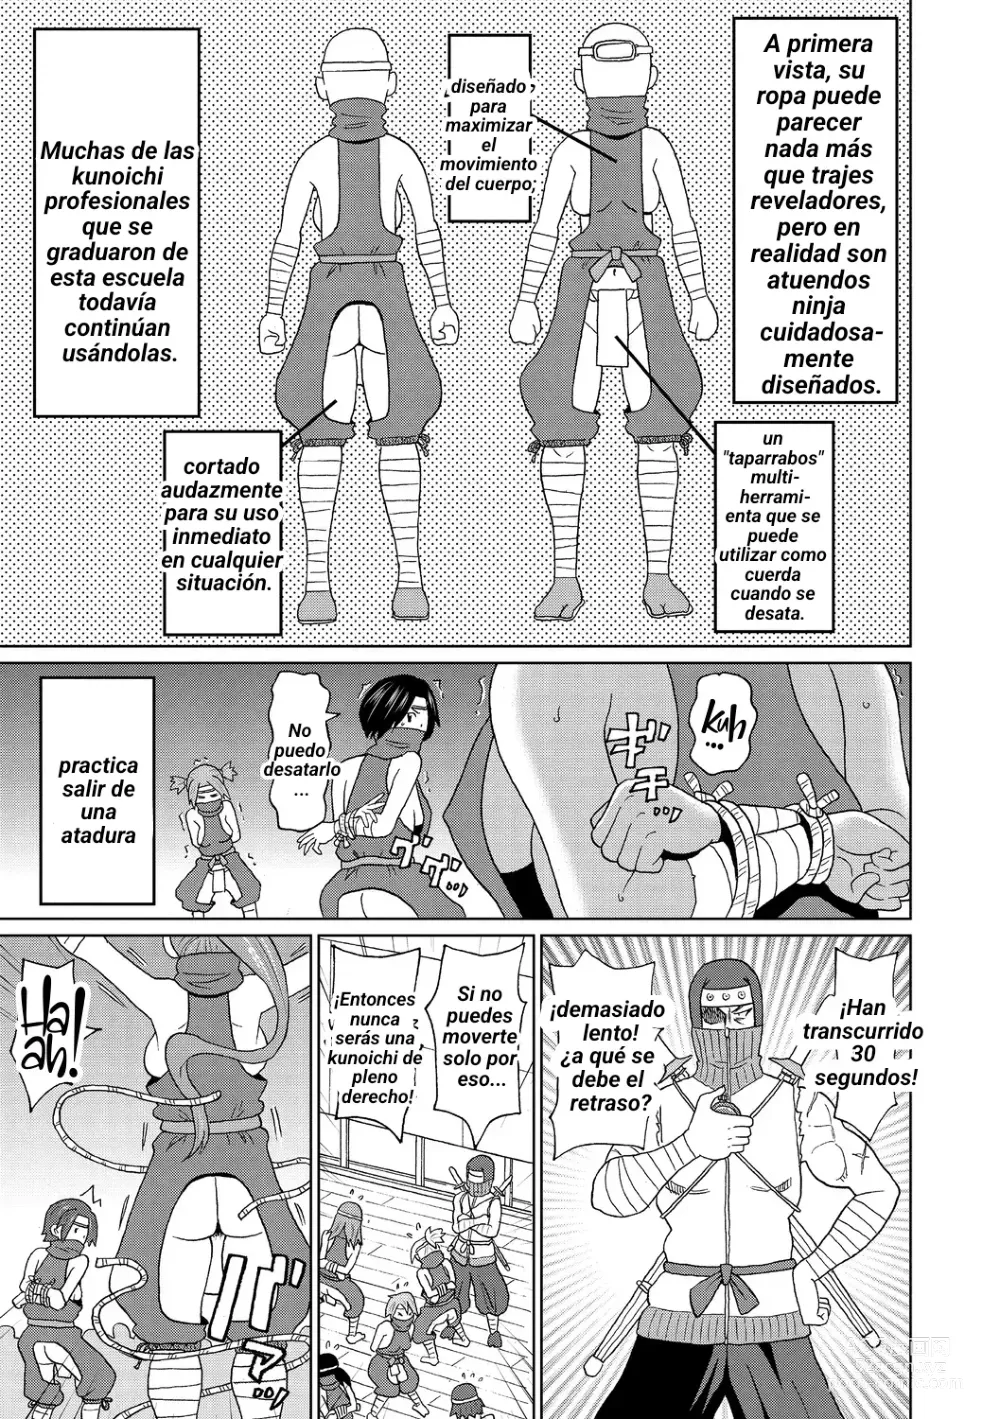 Page 3 of manga Shinmai Kunoichi Shinozaki-san.